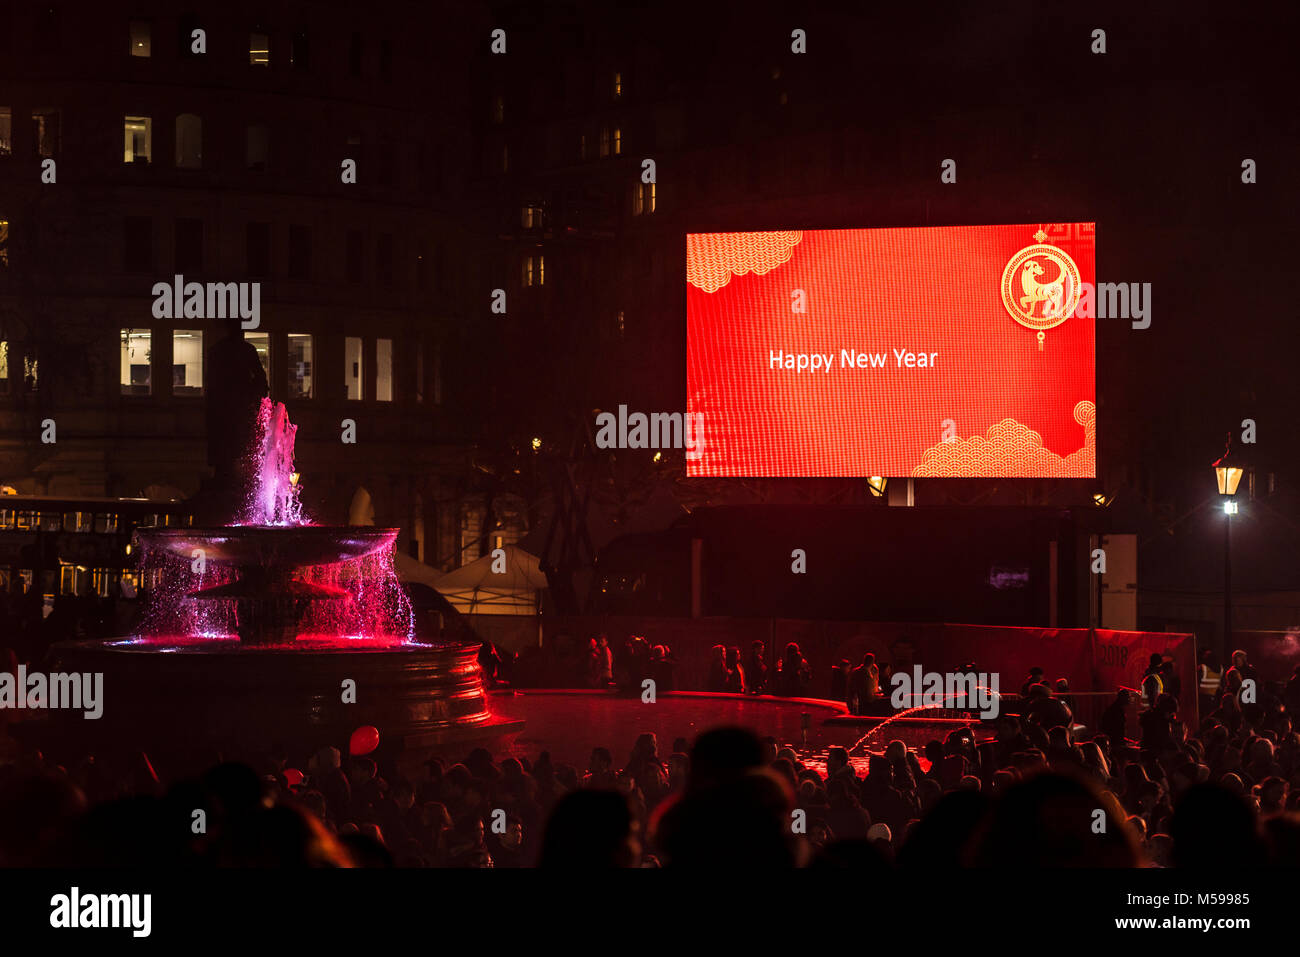 Bonne année sur grand écran. Célébration du nouvel an chinois année du chien sur la place Trafalgar. Foule et grand écran. Fontaine. Nuit. Espace de copie Banque D'Images